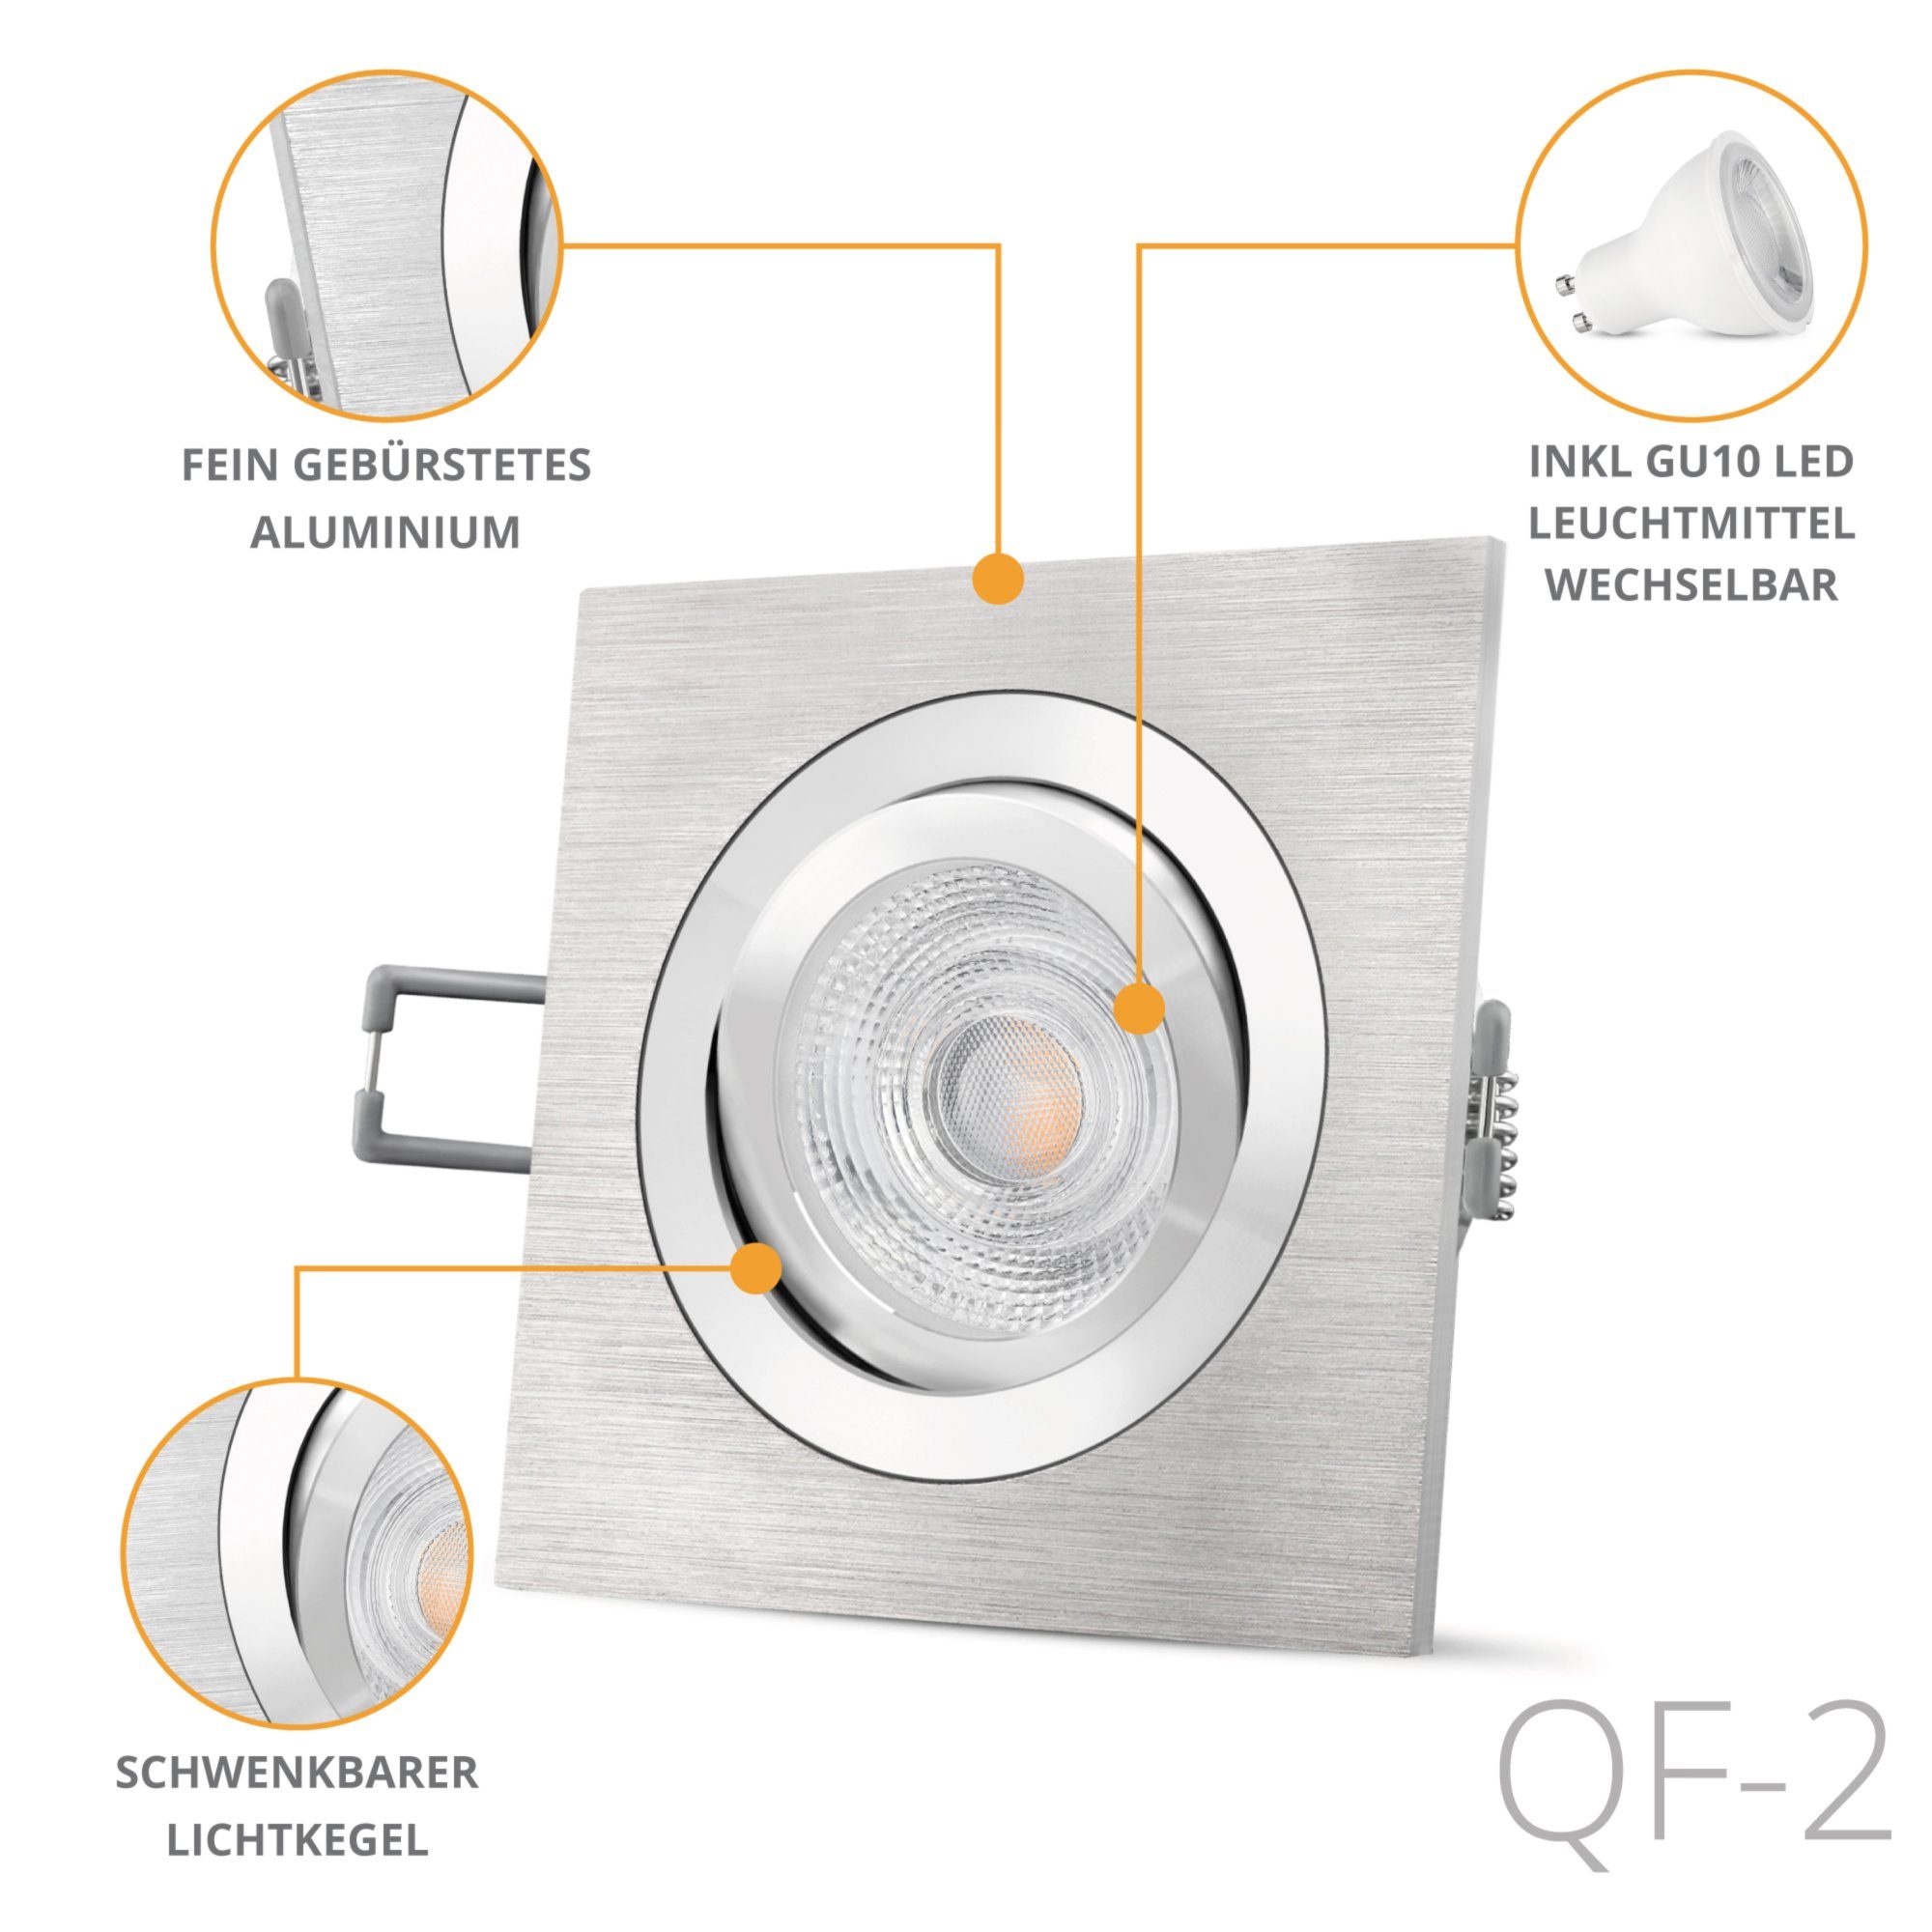 gebuerstet LED SSC-LUXon LED schwenkbar, quadratische Einbauleuchte Alu QF-2 Einbaustrahler Warmweiß